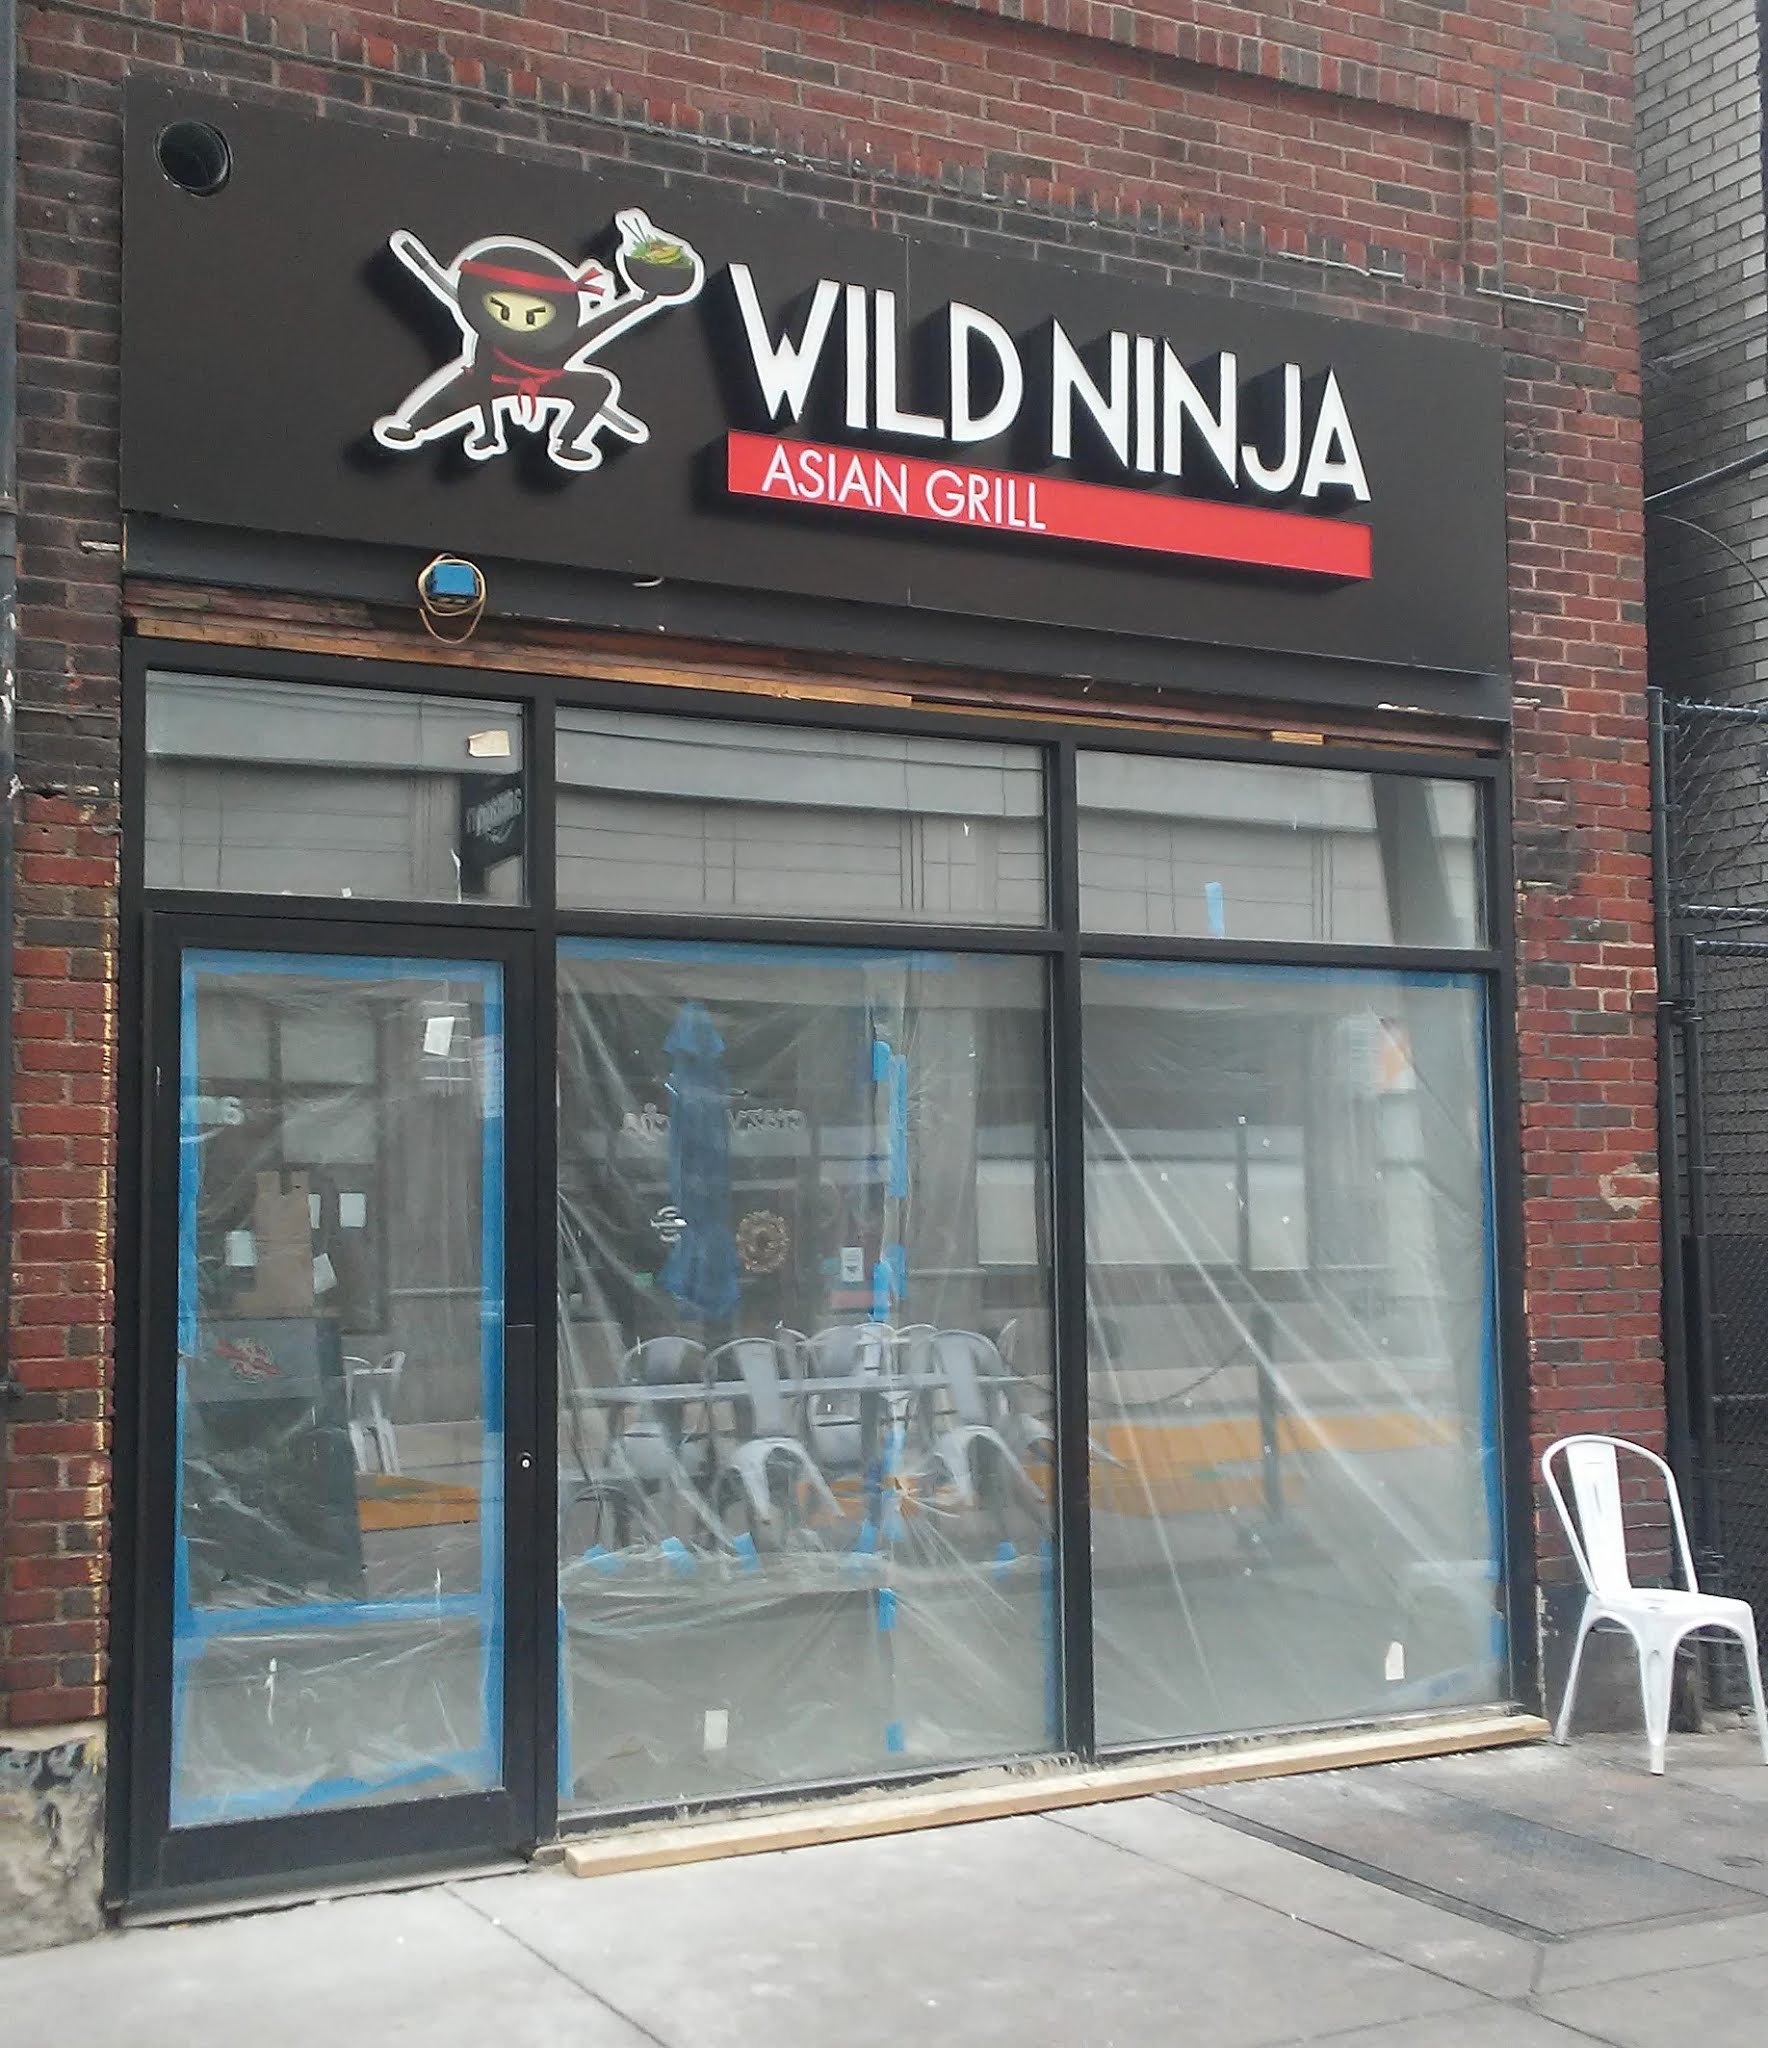 PennsylvAsia: Work on Wild Ninja Asian Grill Oakland.